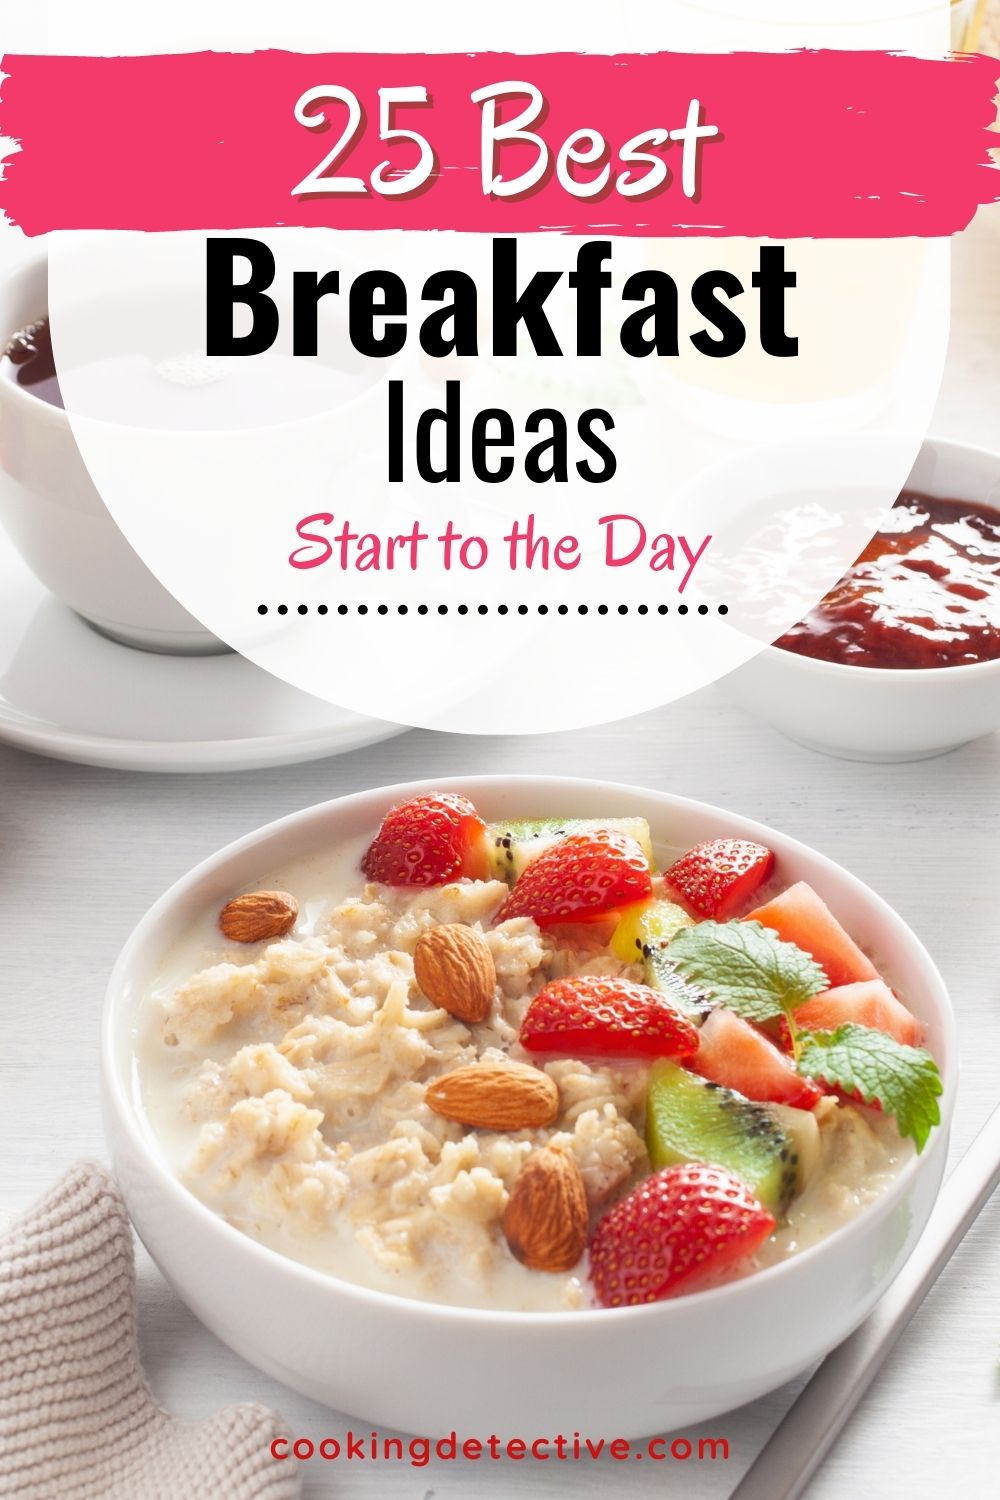 Best Breakfast Ideas